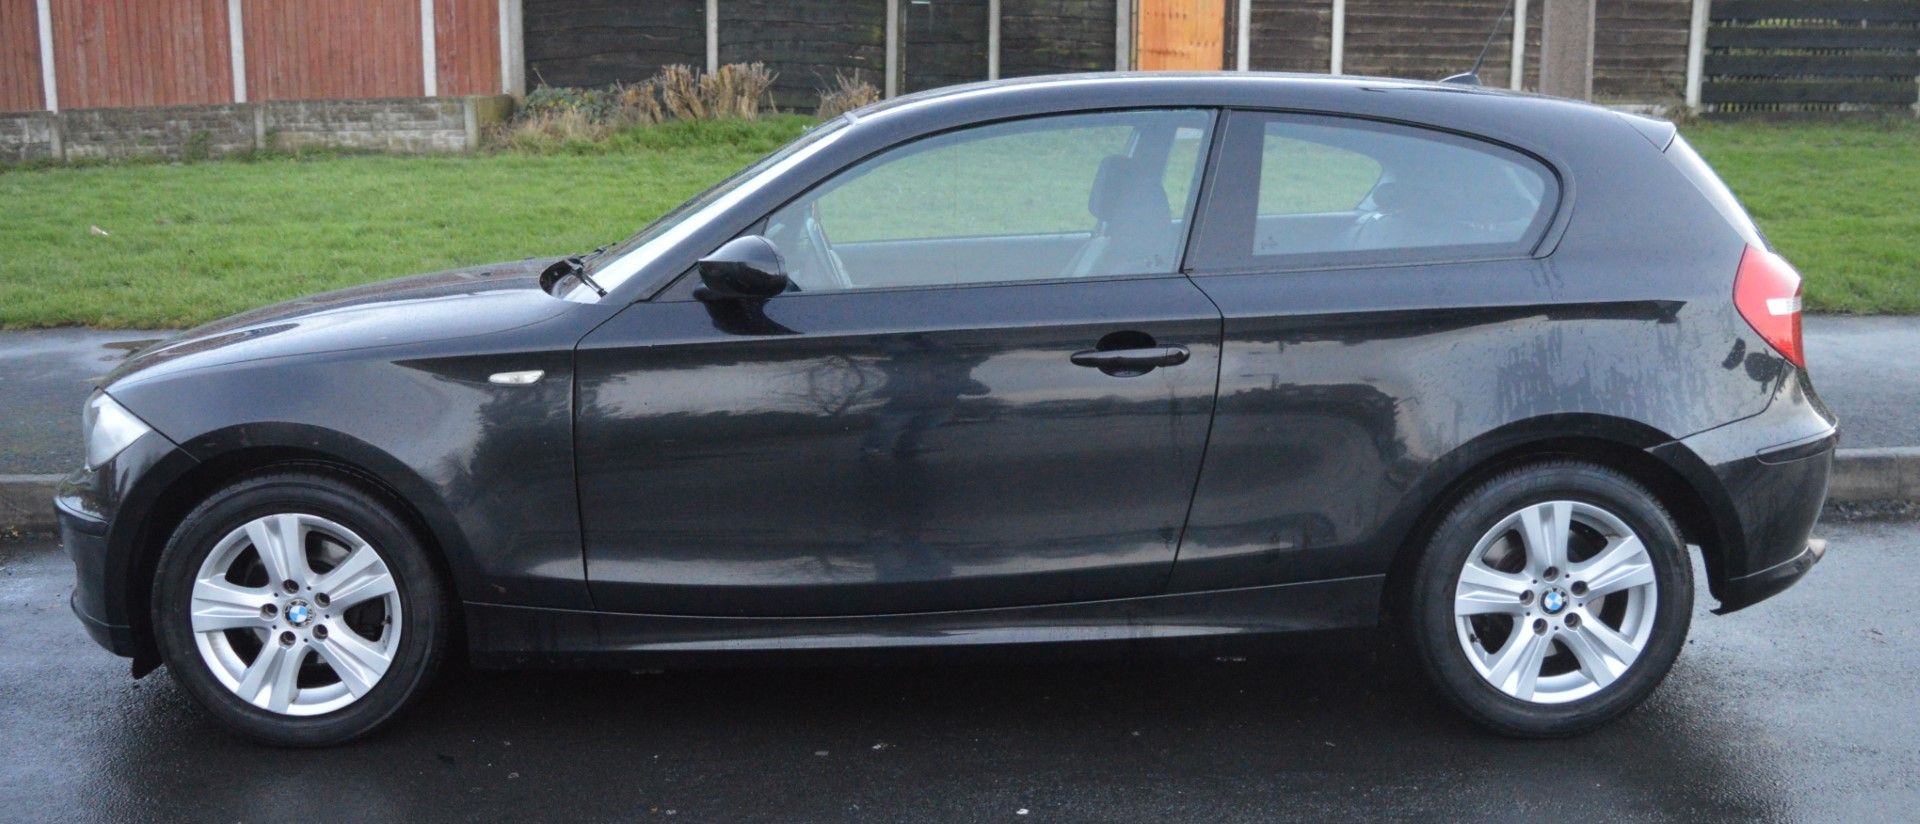 1 x 2008 BMW 1 Series 118d 3 Door Black 2l - £30 Per Year Road Tax - MOT Until January 2020 - - Image 13 of 31